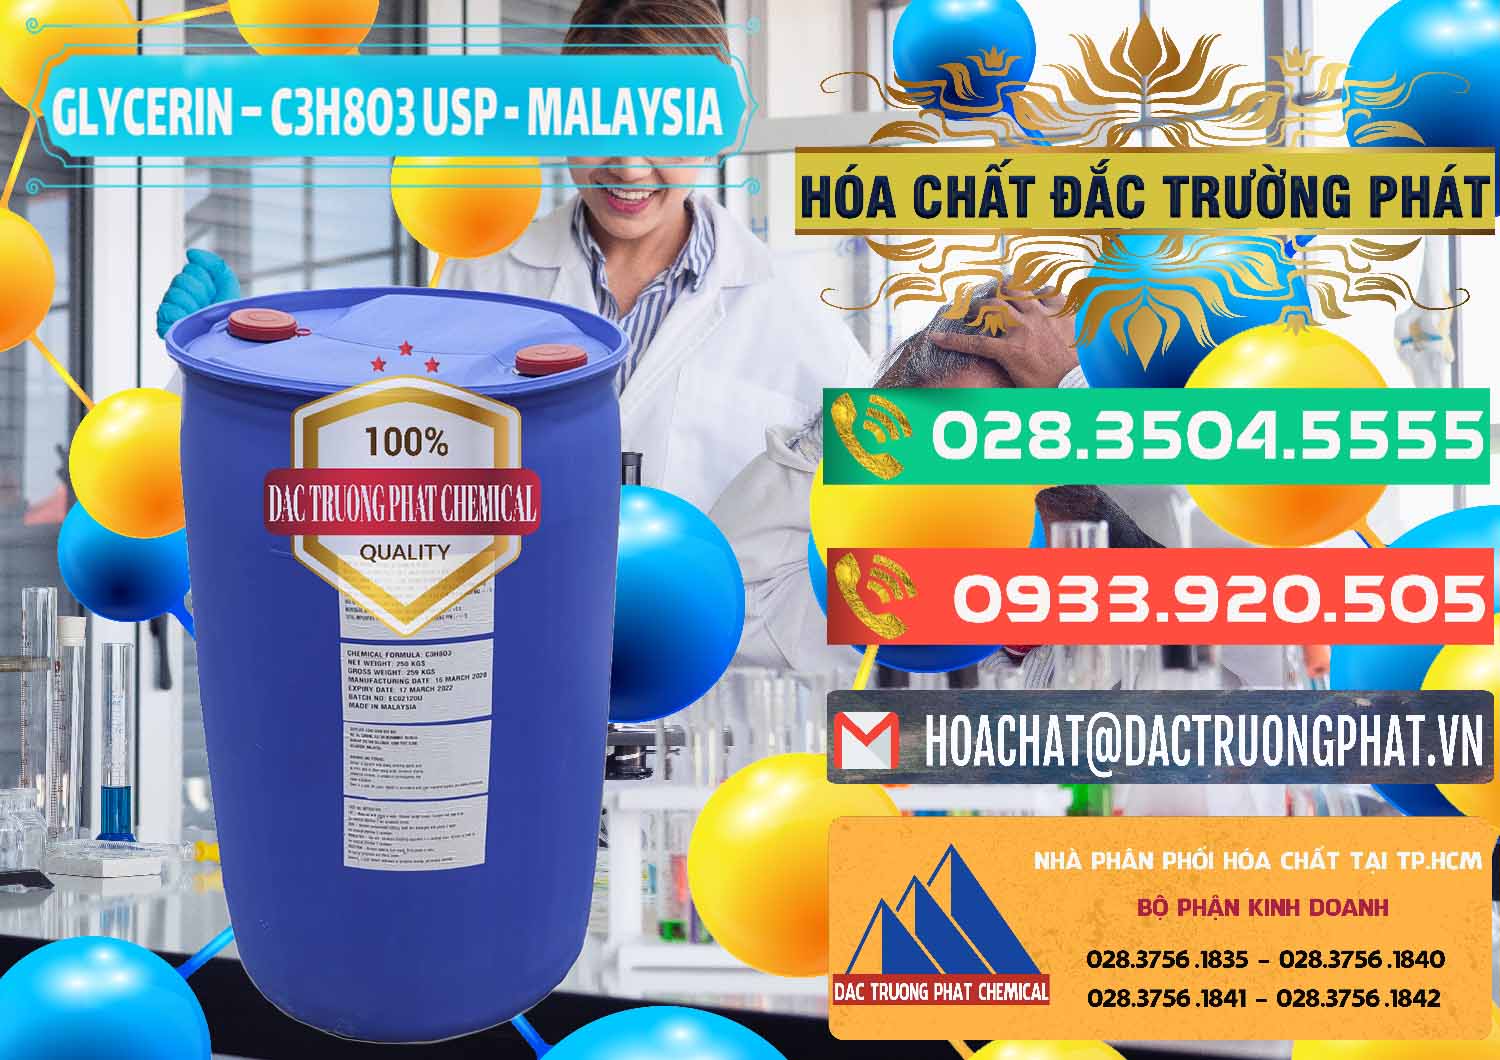 Đơn vị chuyên bán ( phân phối ) Glycerin – C3H8O3 USP Malaysia - 0233 - Cty chuyên kinh doanh ( cung cấp ) hóa chất tại TP.HCM - congtyhoachat.com.vn